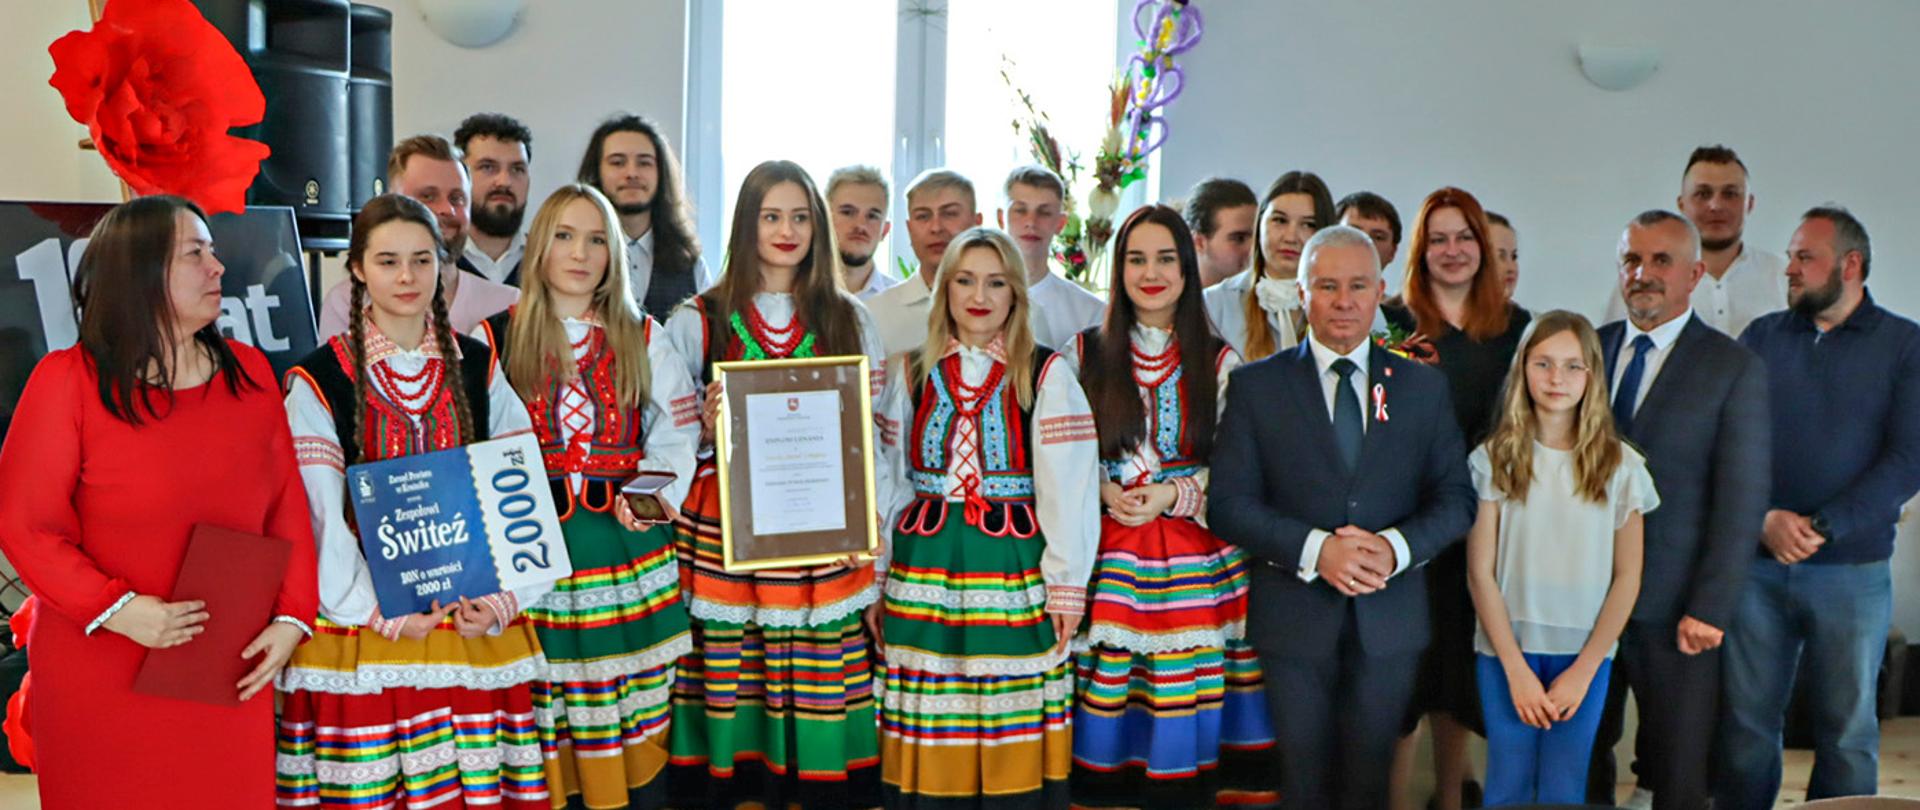 Zdjęcie przedstawia przedstawicieli Zarządu Powiatu w Kraśniku oraz członków zespołu pozujących do pamiątkowego zdjęcia. Członkowie zespołu ubrani są w kolorowe stroje ludowe.